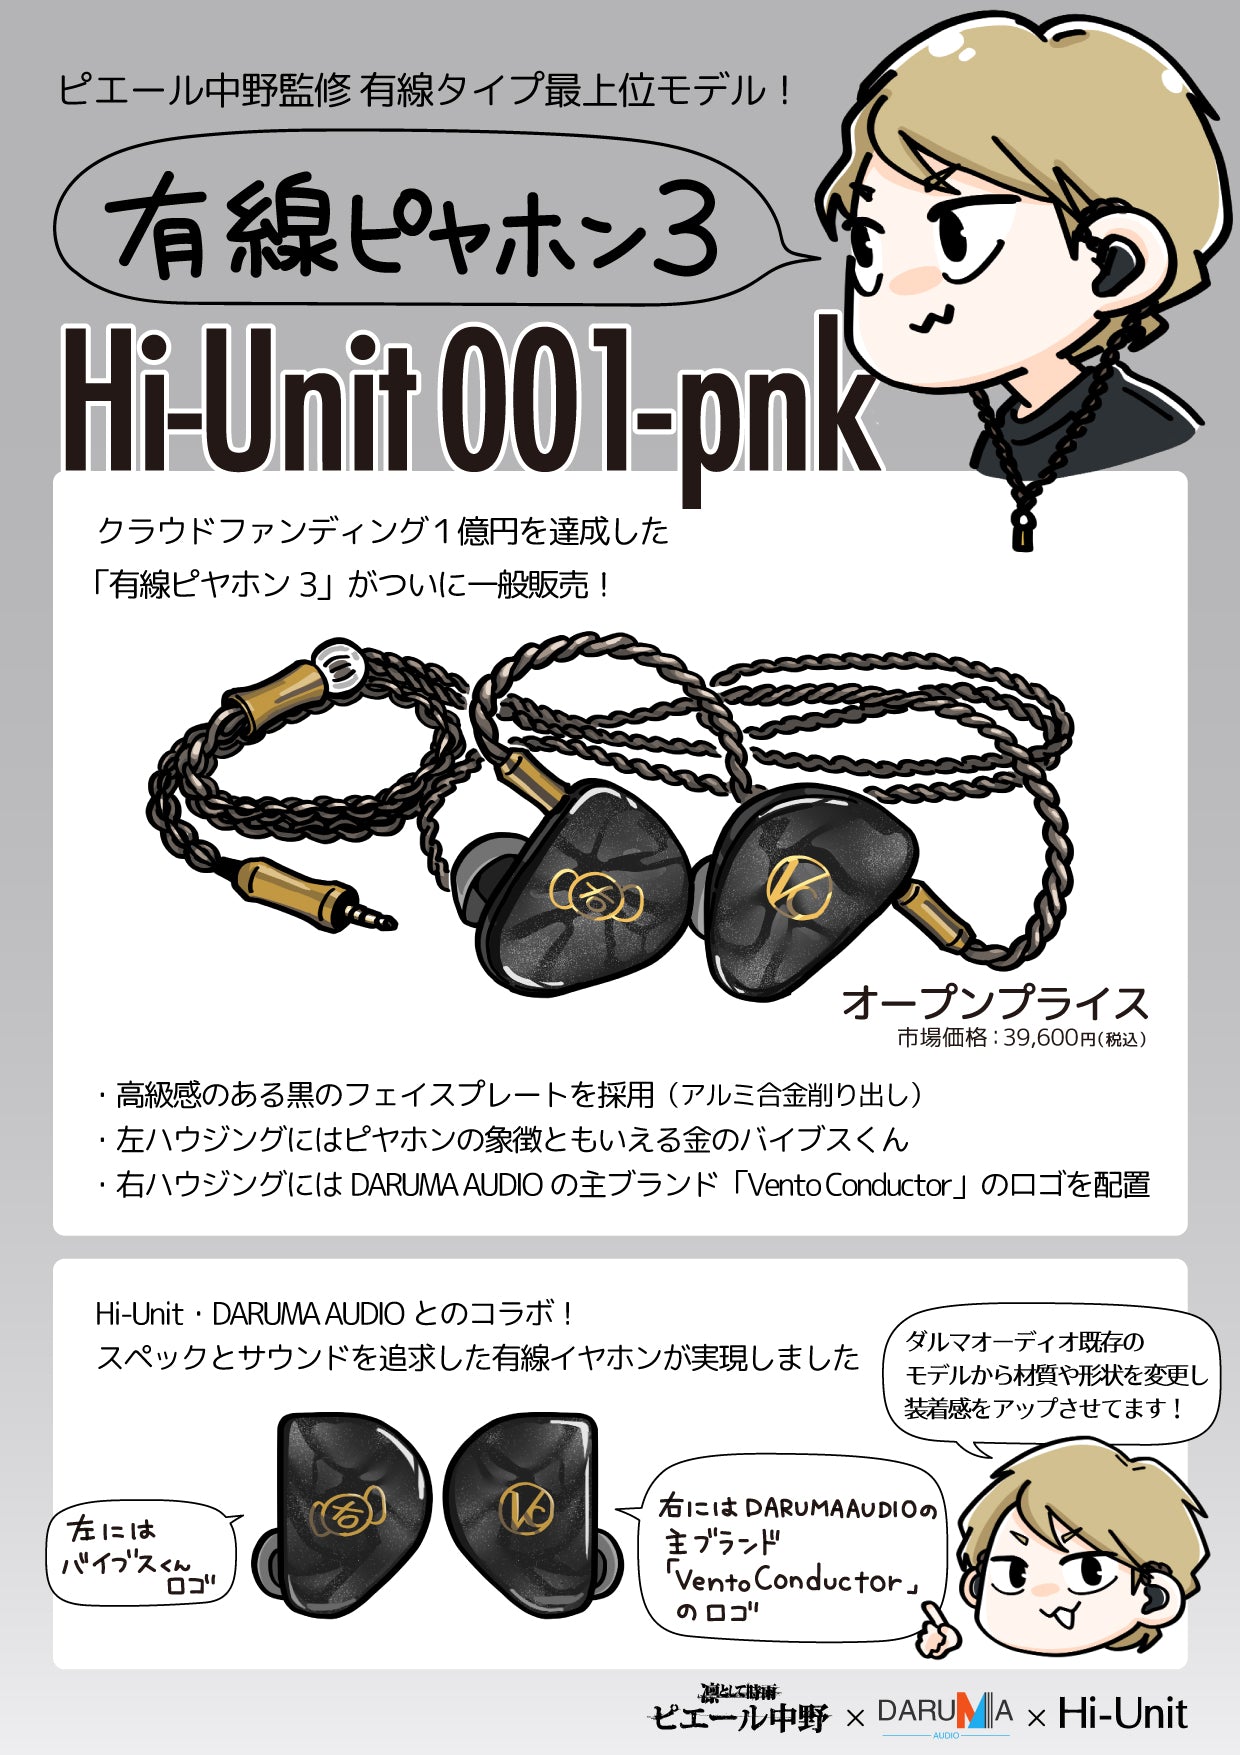 有線ピヤホン3 Hi-Unit 001-pnkヘッドフォン/イヤフォン - www.dso-ilb.si